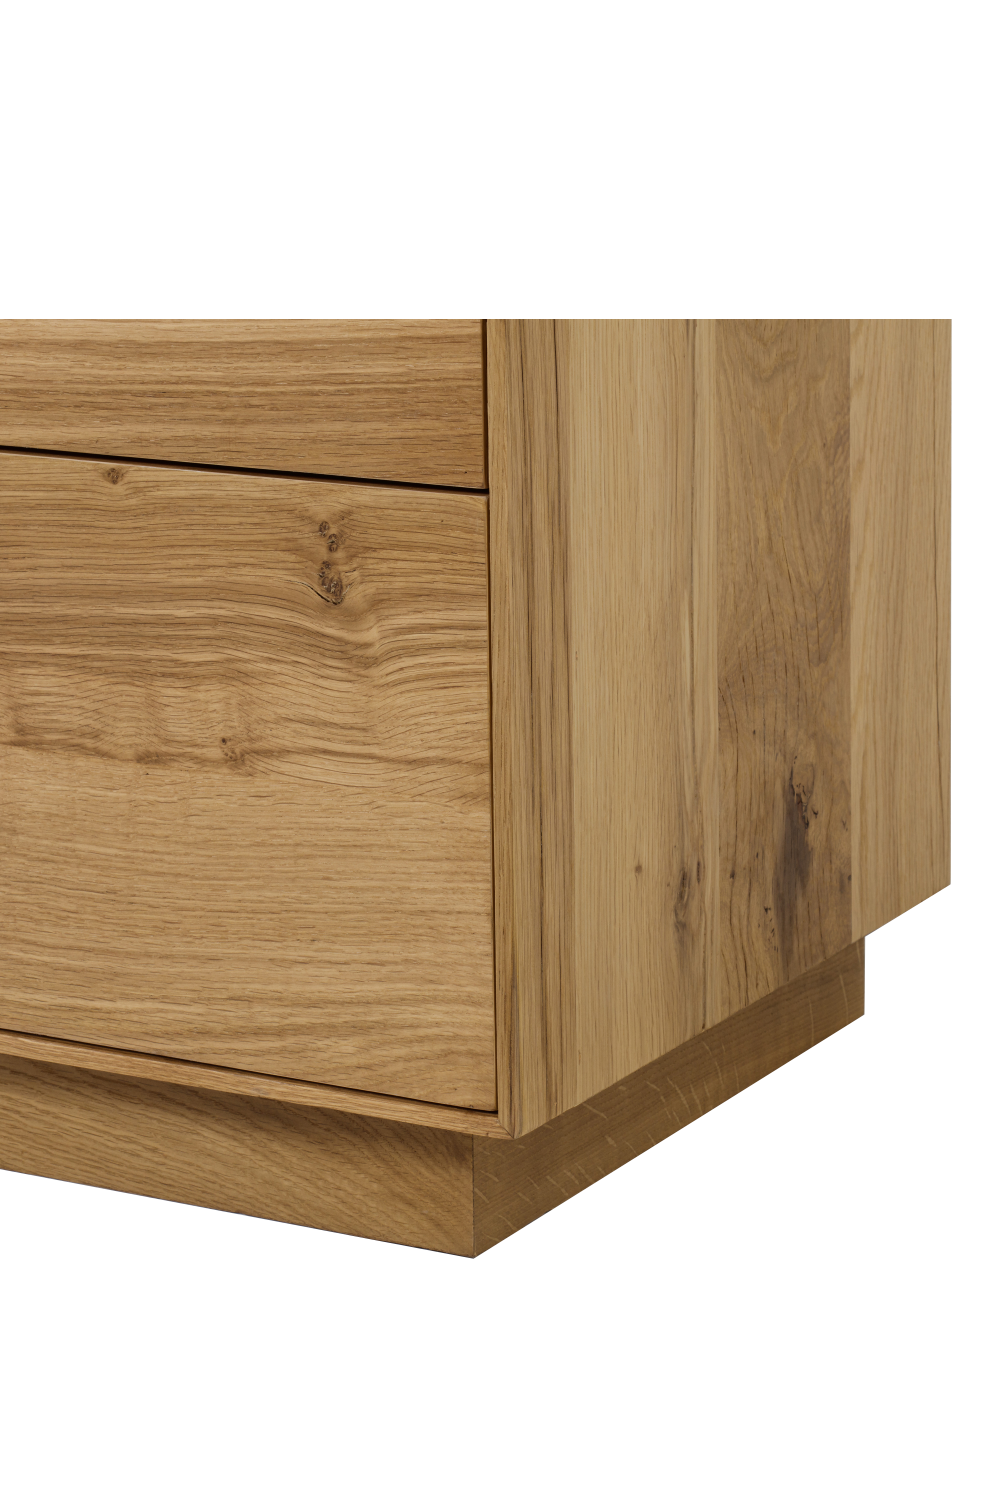 Oak Four Drawer Dresser | Andrew Martin Sands | OROA